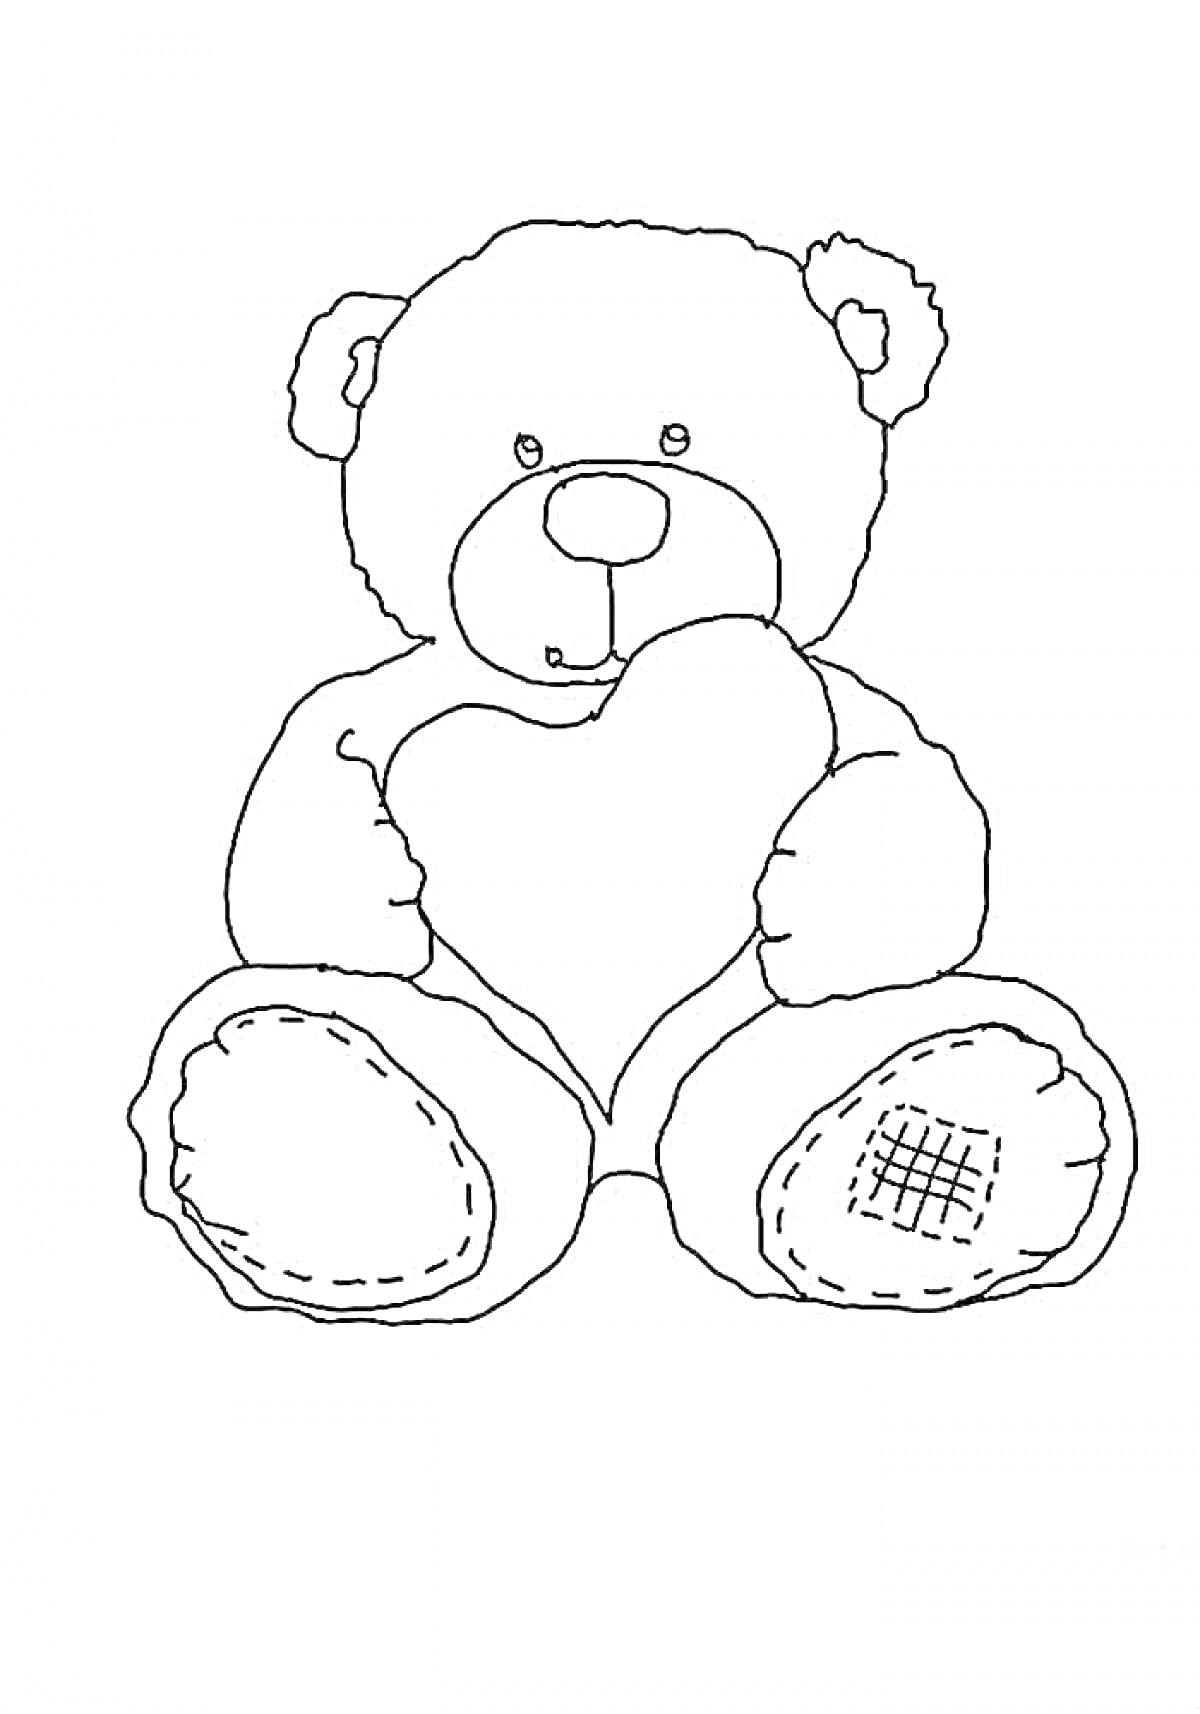 Раскраска Мишка Тедди с заплаткой на лапе, держащий сердце